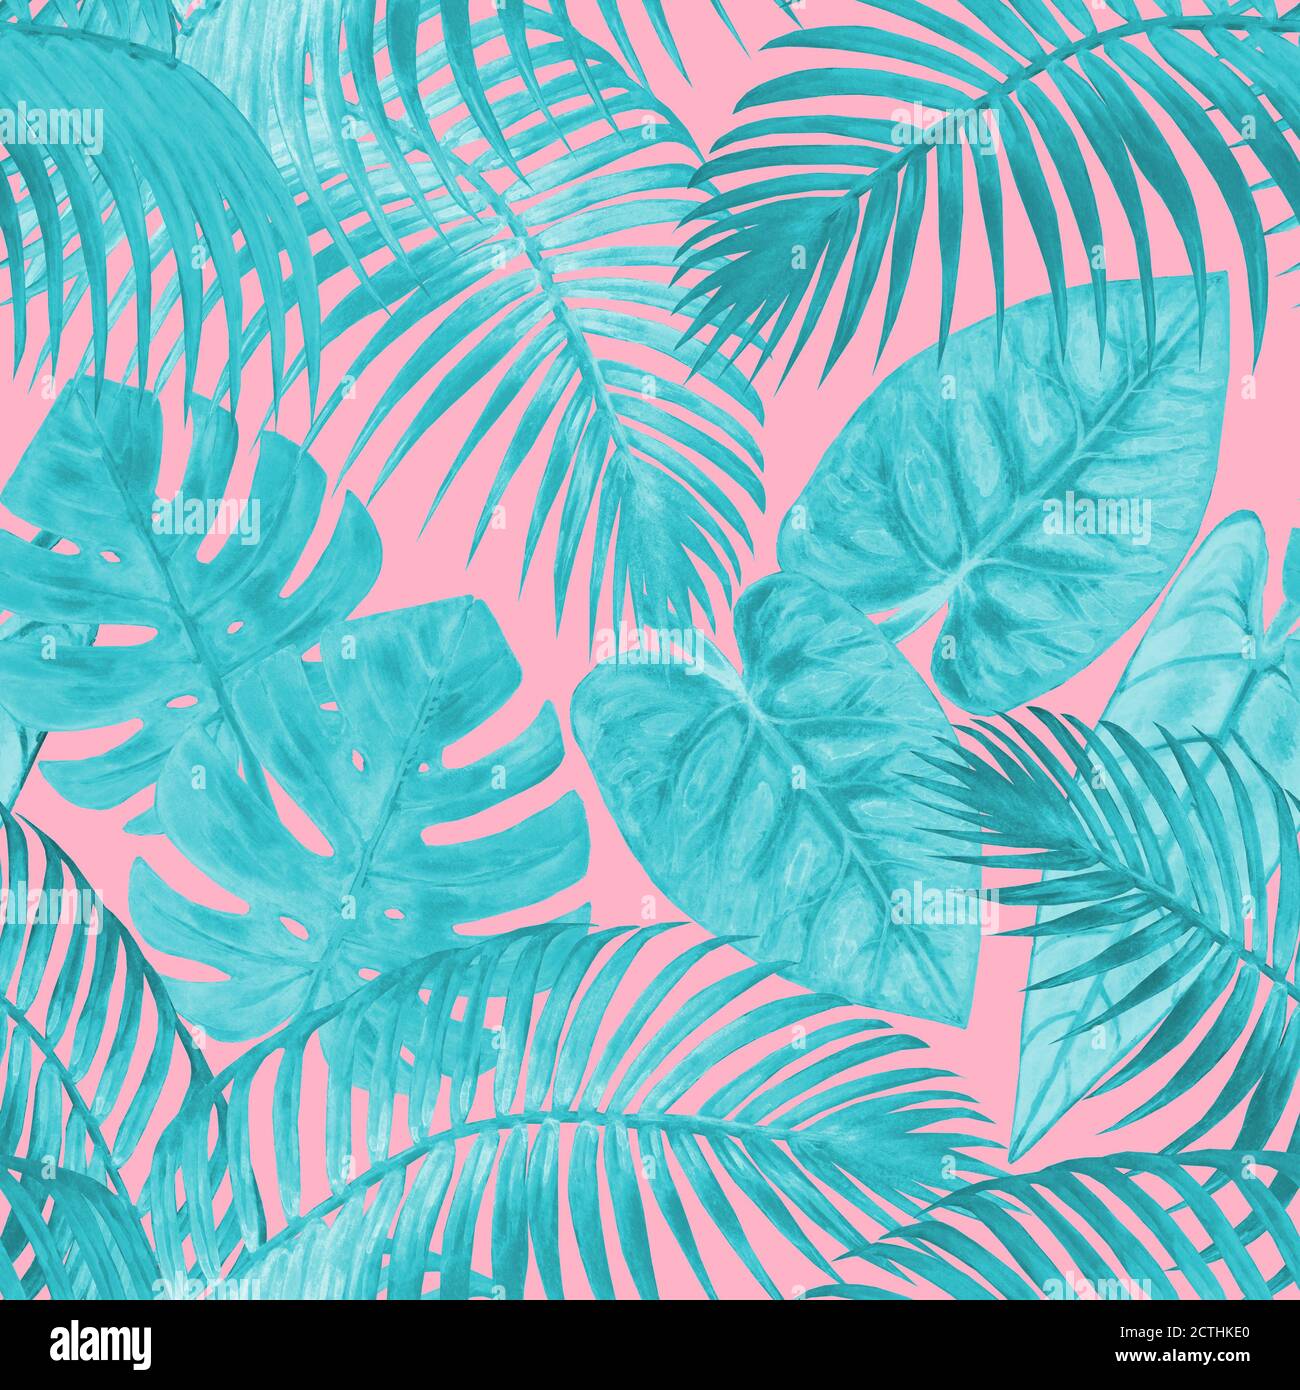 Acquerello astratto estate motivo senza giunture con piante tropicali turchesi di teal su sfondo rosa chiaro. Foglie esotiche disegnate a mano con acquerello. Stampa Foto Stock